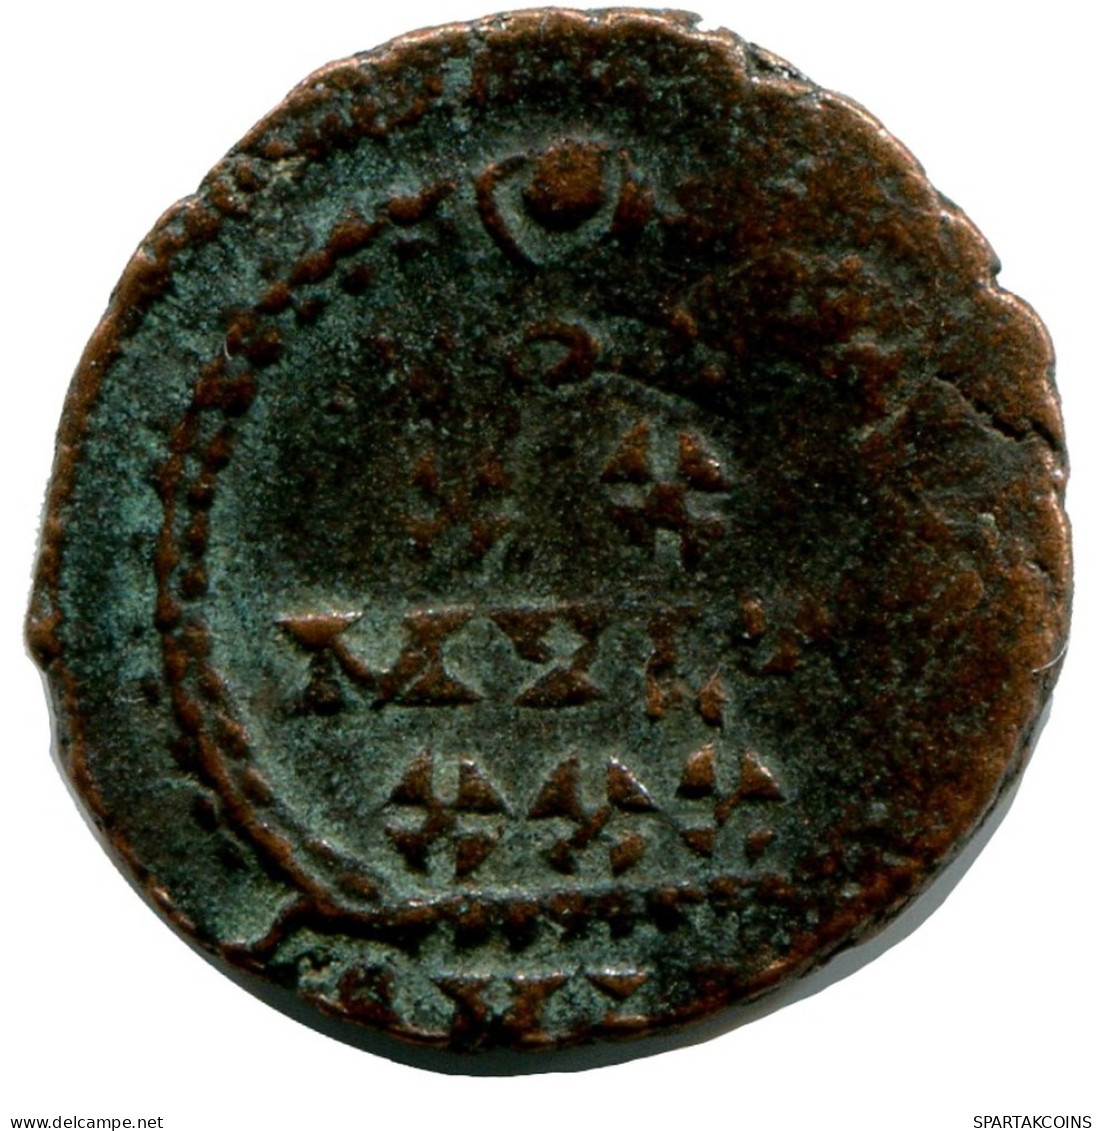 CONSTANTIUS II MINTED IN ALEKSANDRIA FOUND IN IHNASYAH HOARD #ANC10219.14.E.A - L'Empire Chrétien (307 à 363)